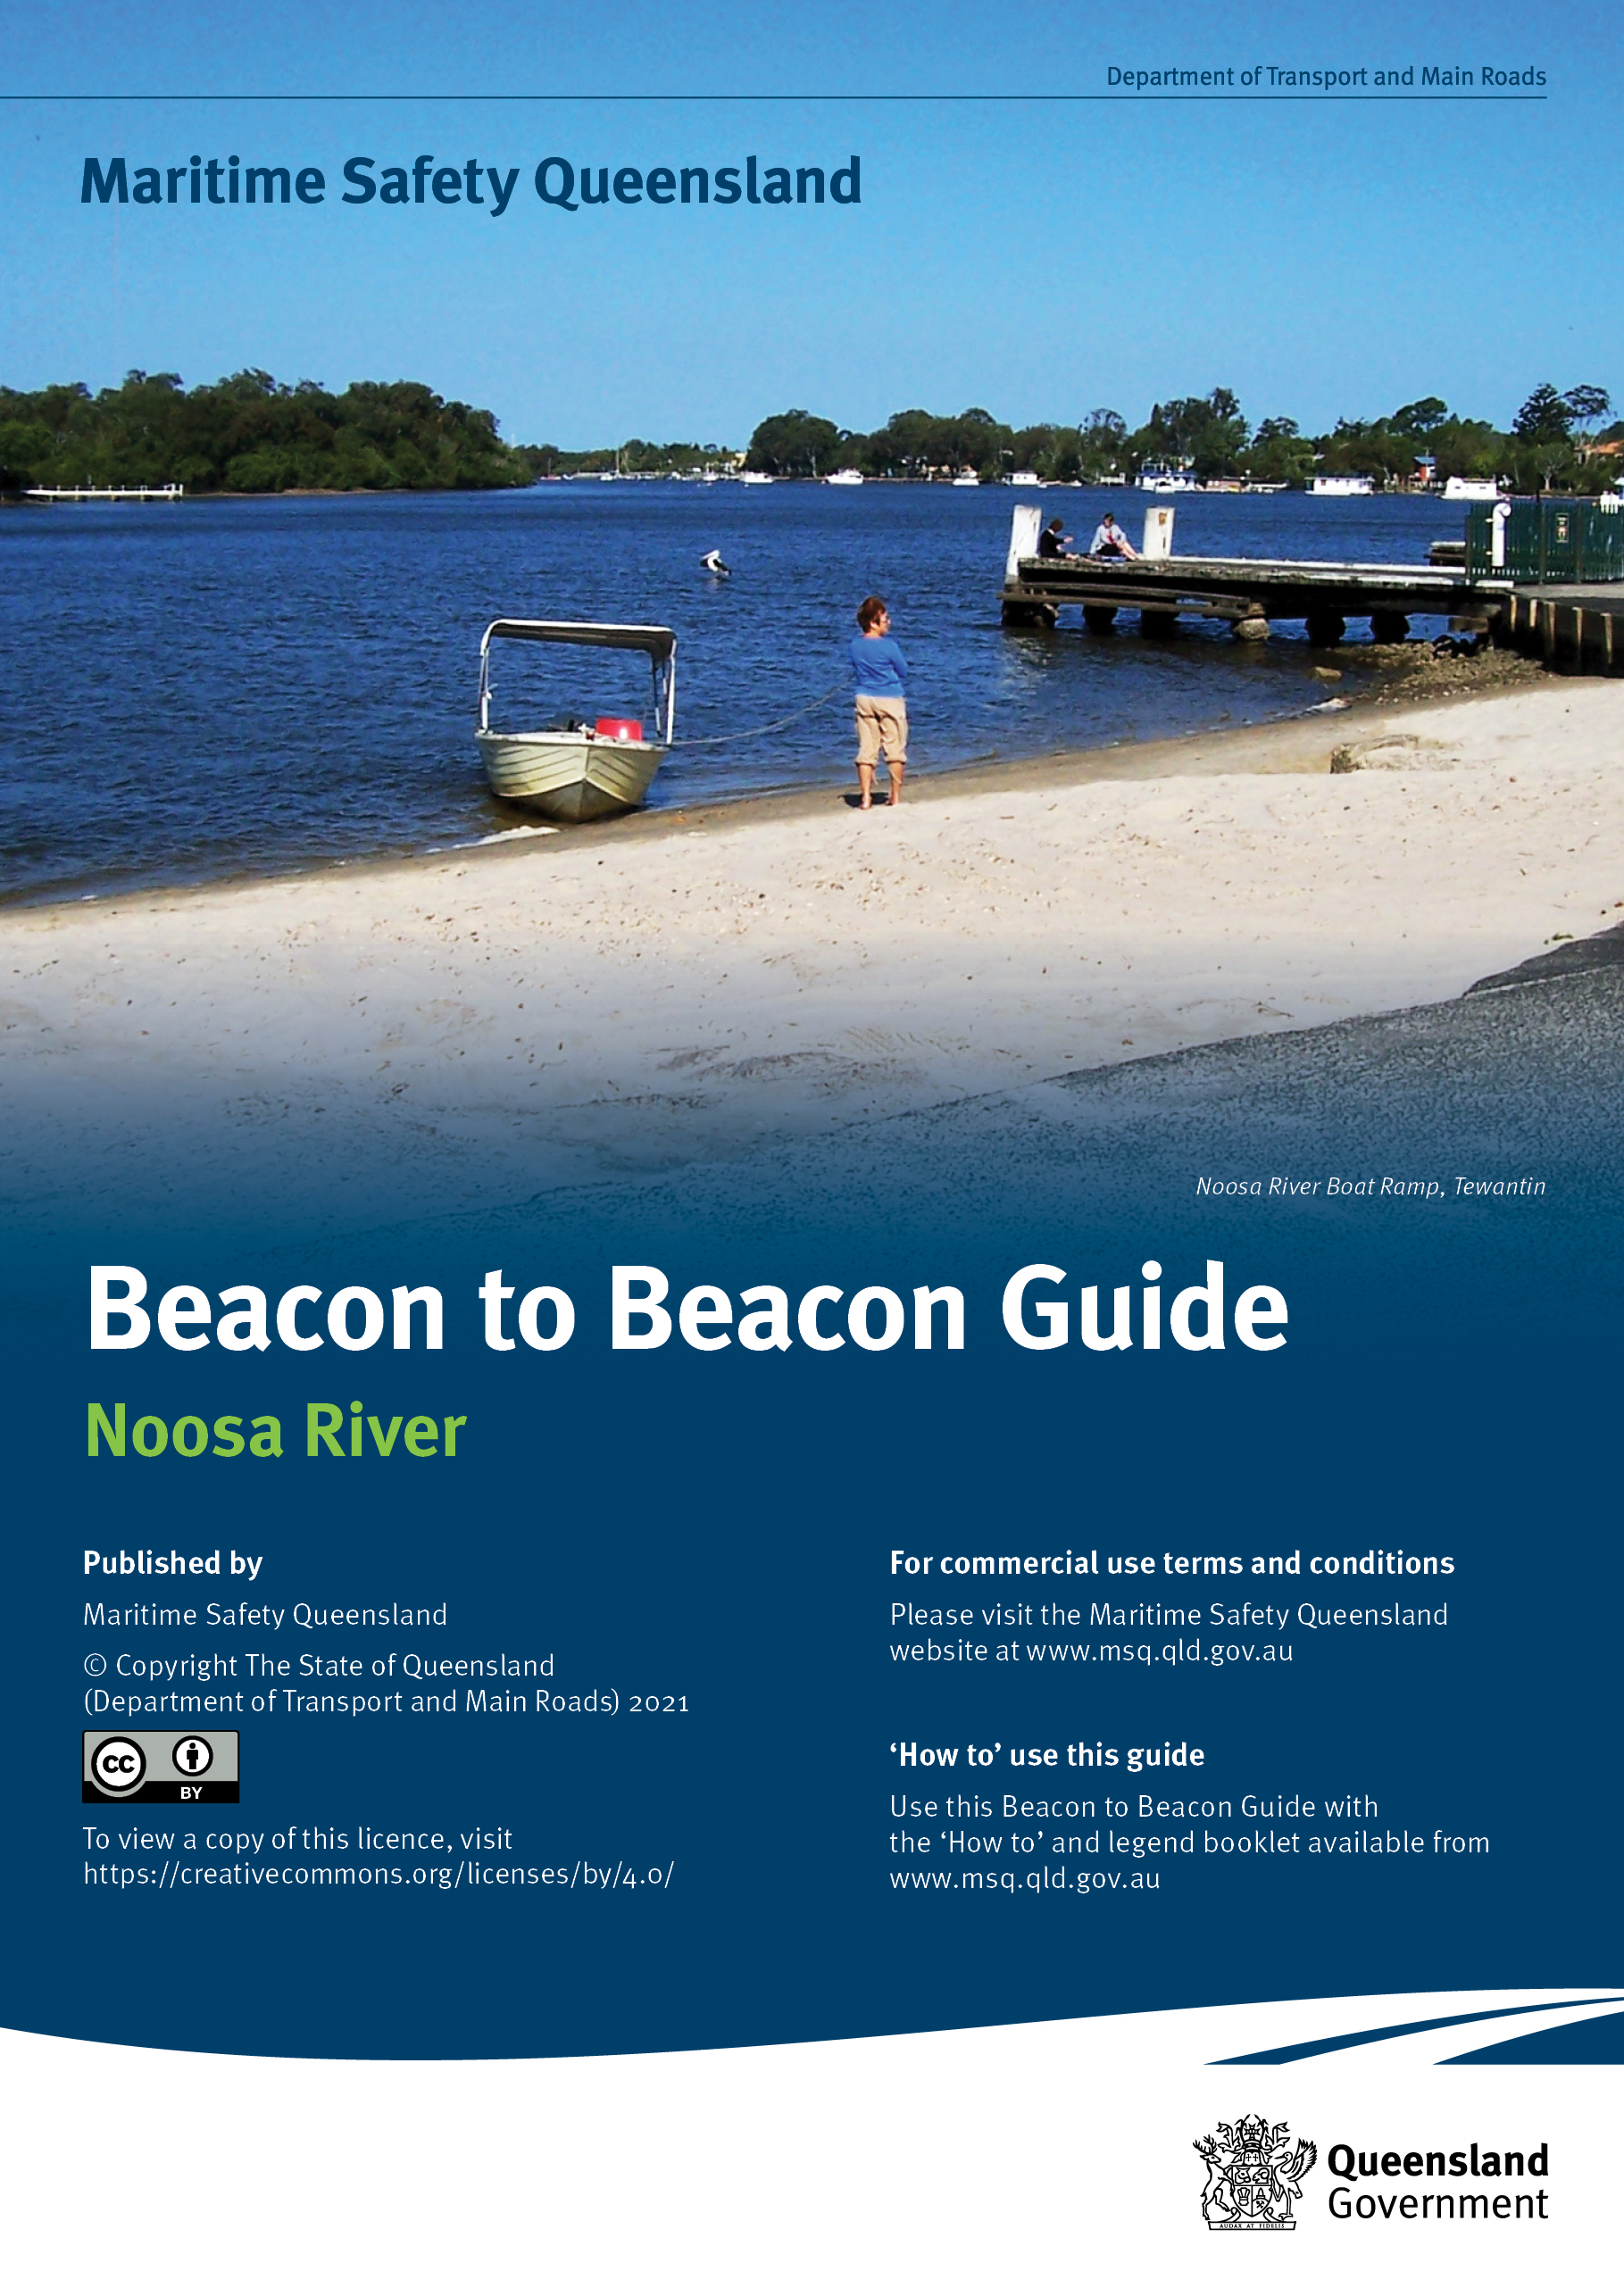 Beacon to Beacon Guide—Noosa River